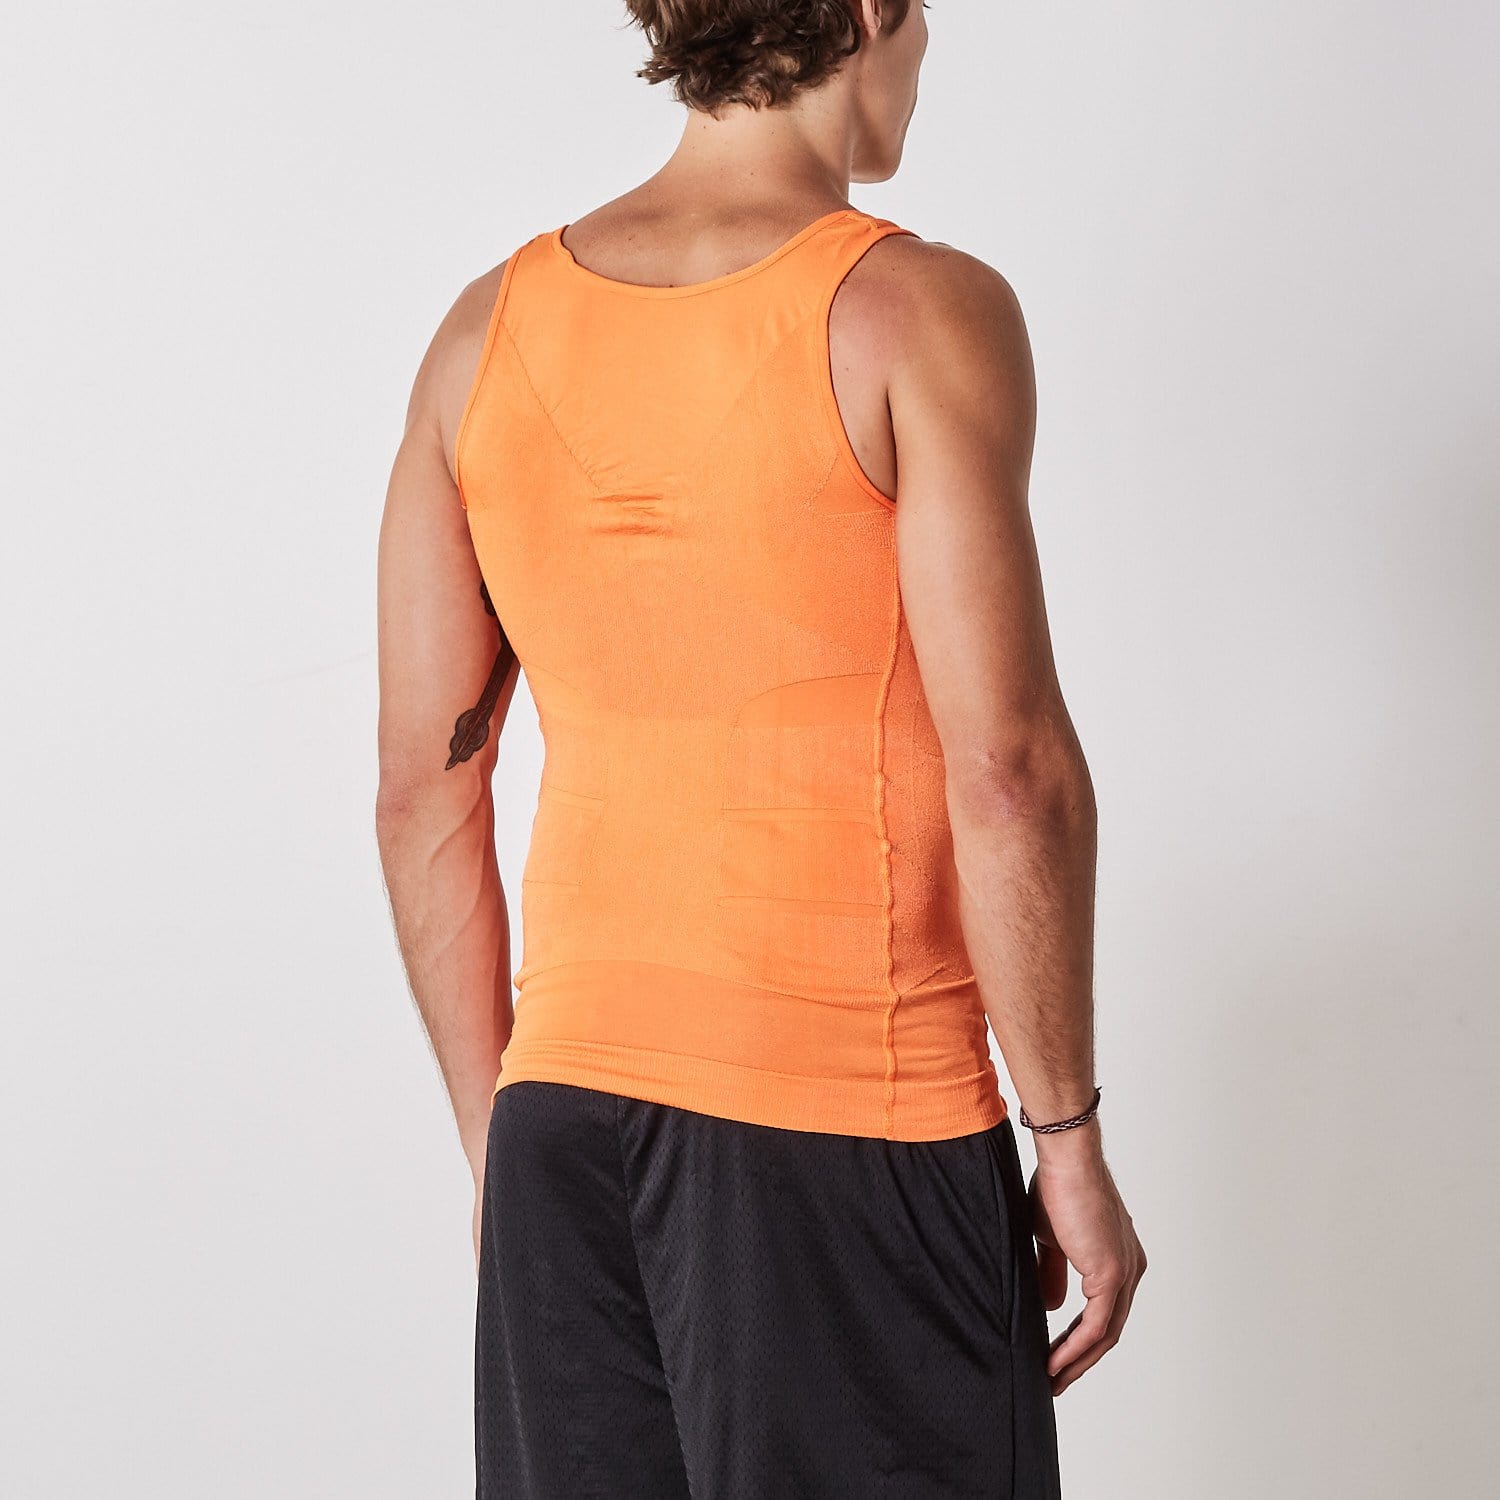 Mistirik Compression Shirts for Men - Mens Slimming Body Shaper Vest -  Tight Tank Top for Men - Compression Shirt Tank Top